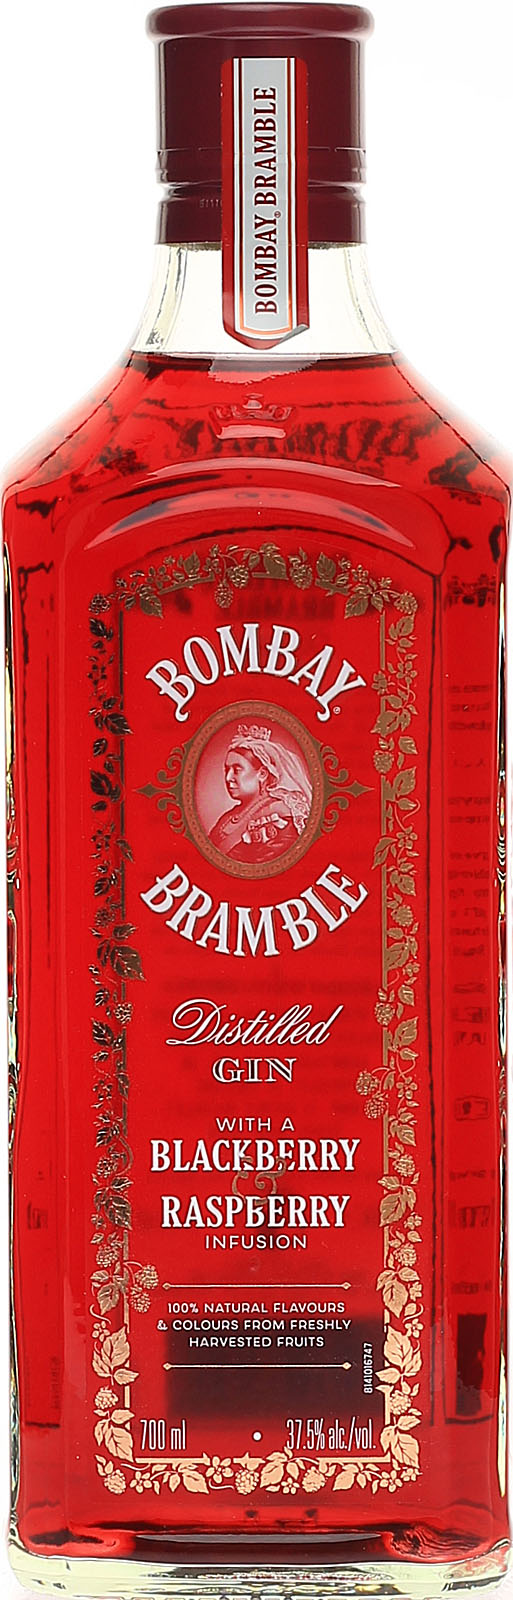 uns im Ginbei Bombay Distilled Shop Bramble